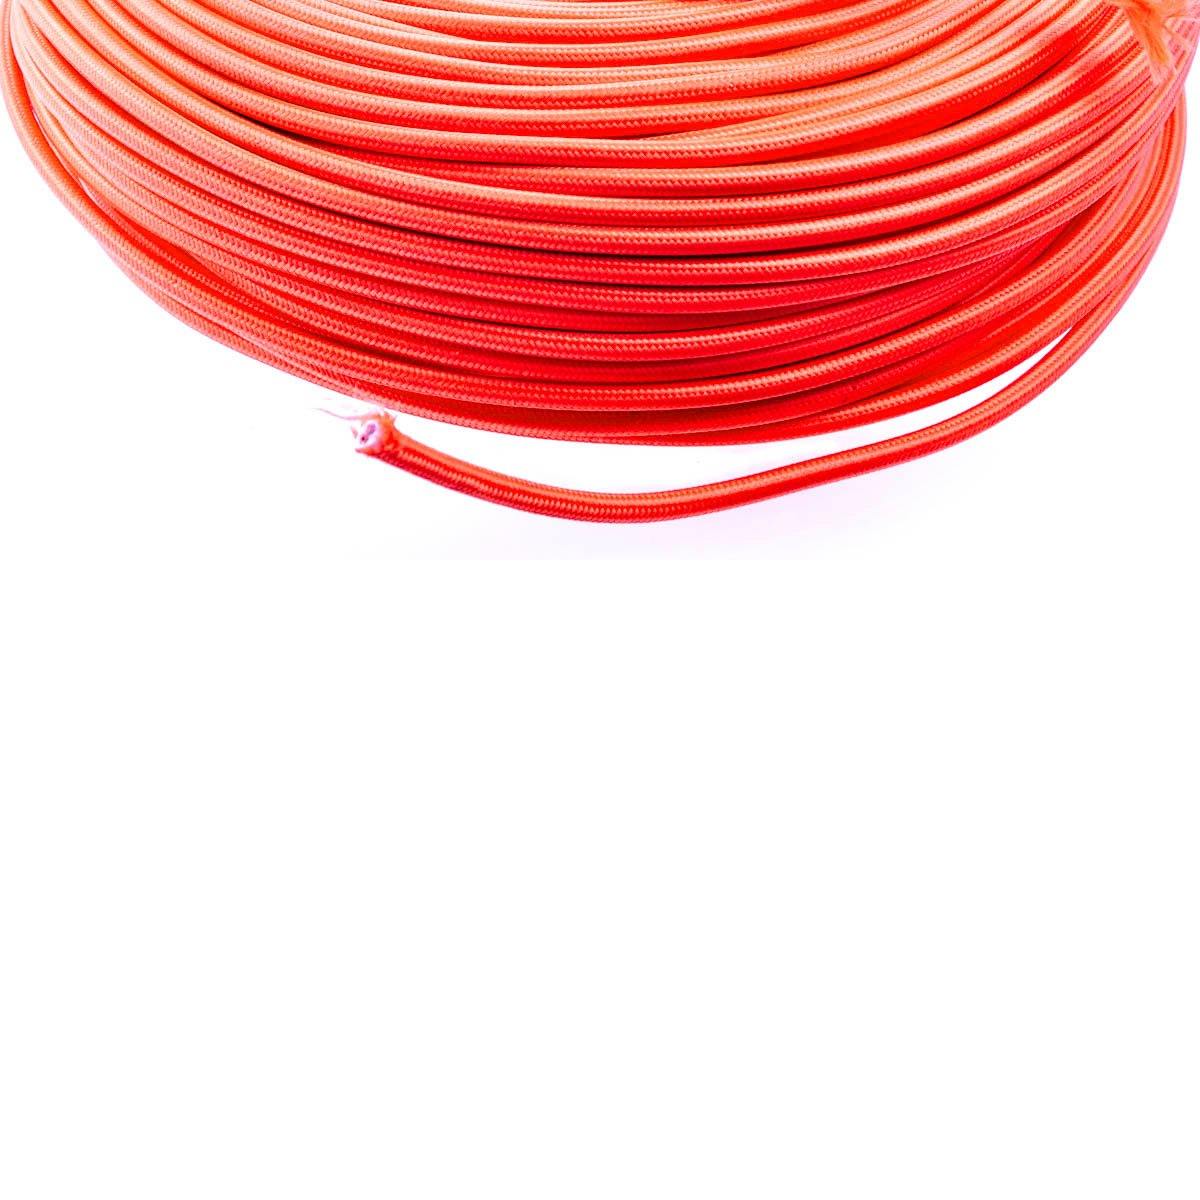 Cablu electric colorat portocaliu - 1 metru premium fir cupru litat, 2*0.75 mm Domicilio